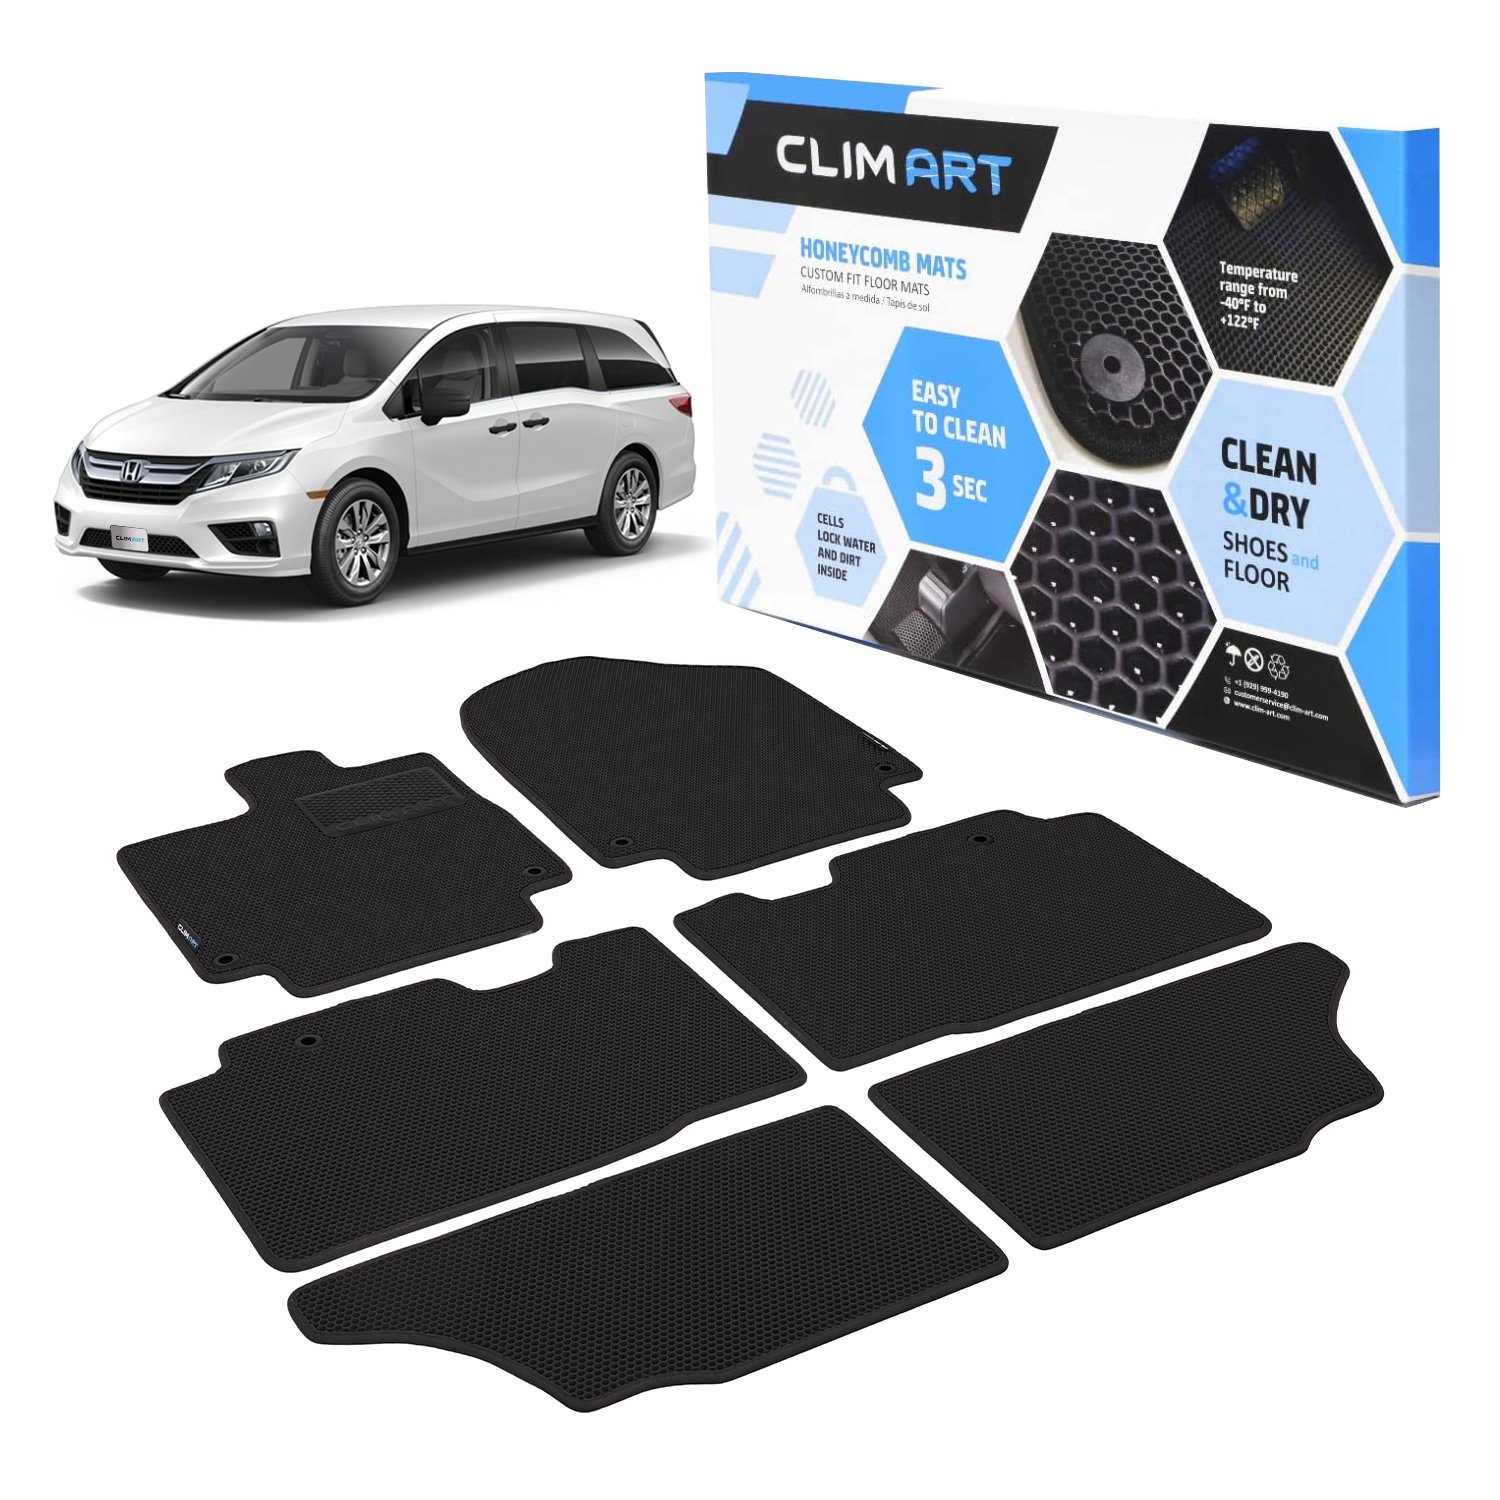 CLIM ART Honeycomb Custom Fit Floor Mats Fits Select Honda Odyssey